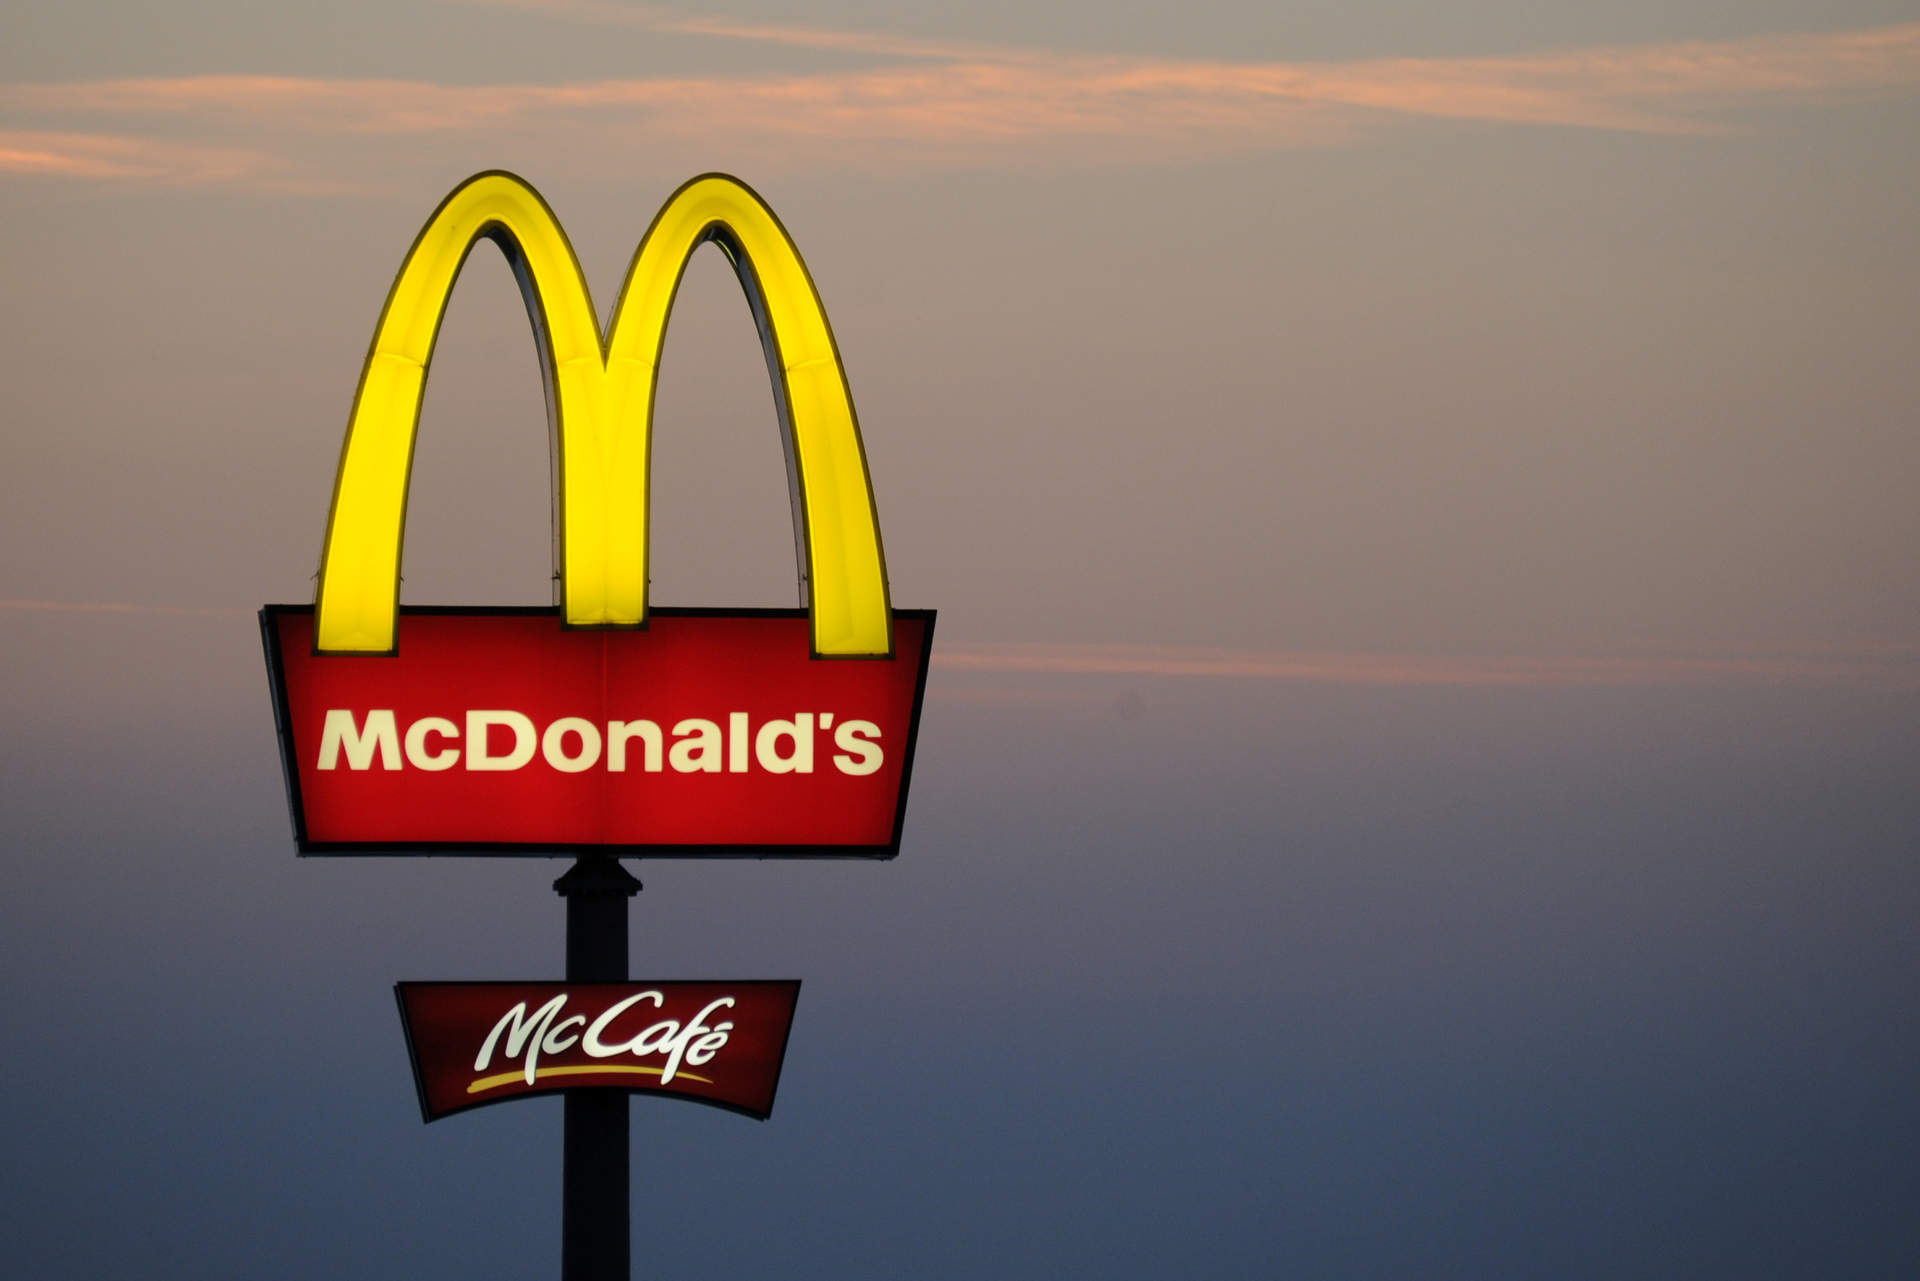 McDonald's descarta un ciberataque y atribuye a un proveedor externo el fallo informático global